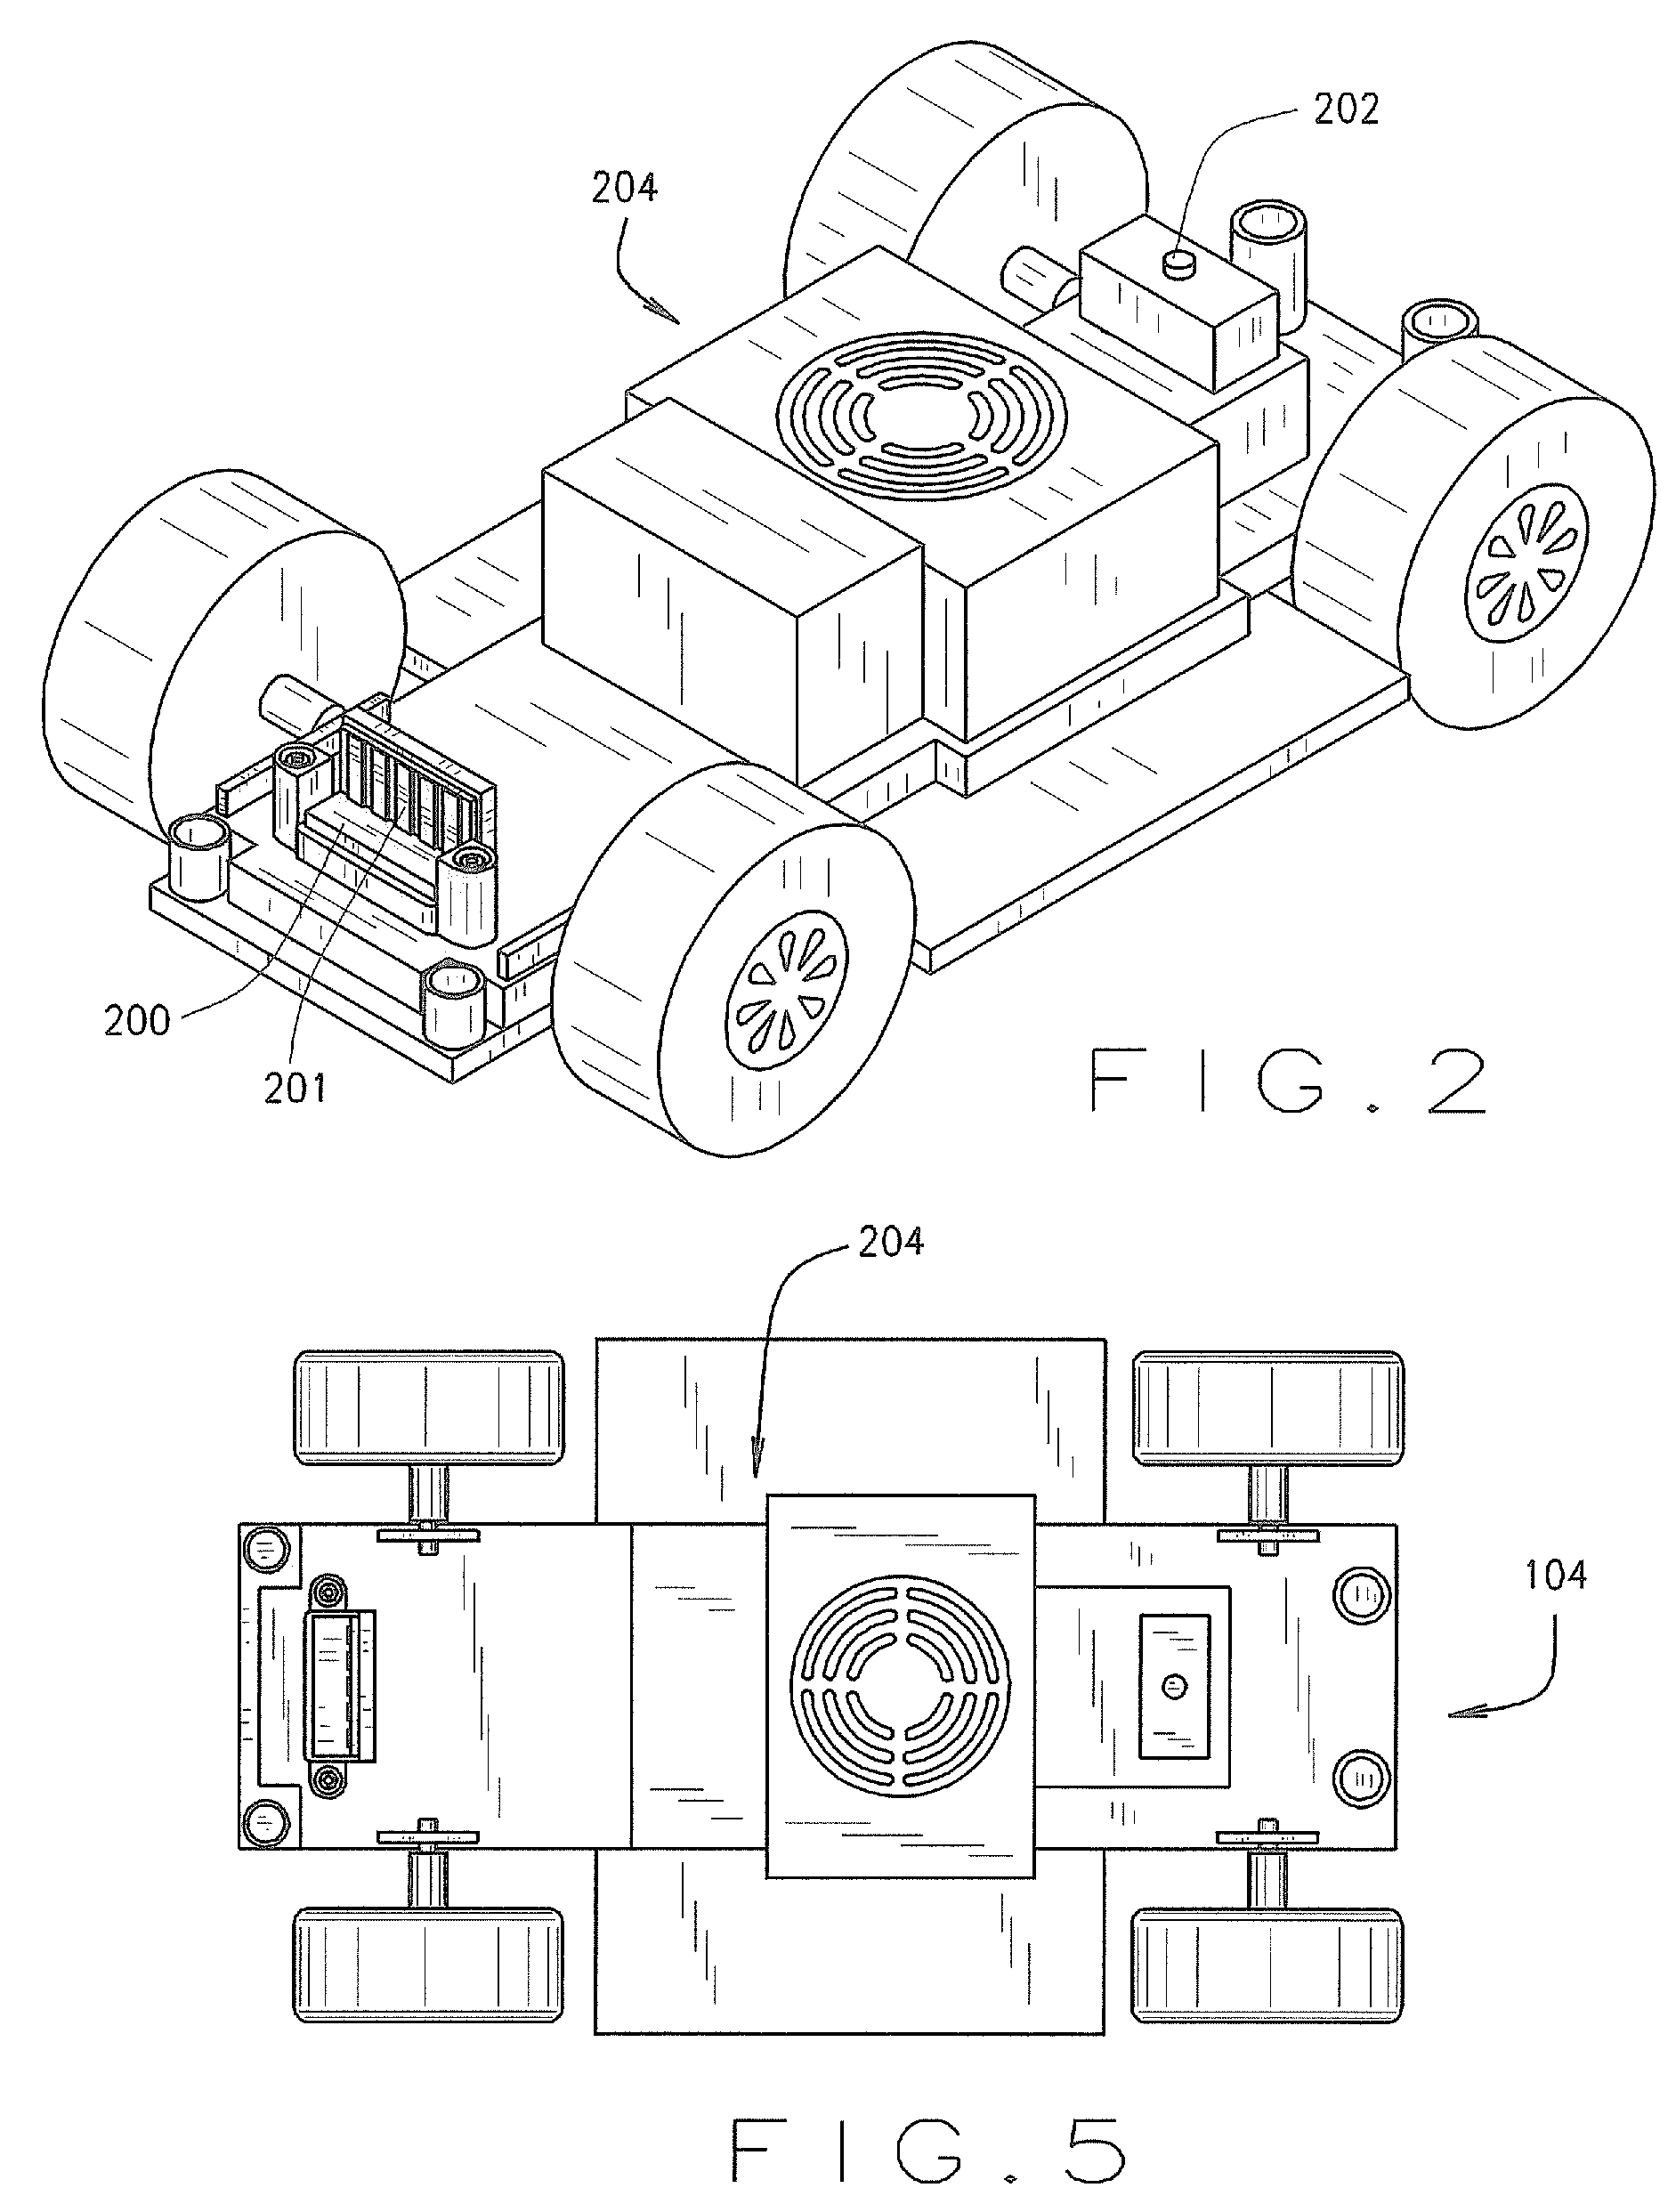 Modular toy vehicle